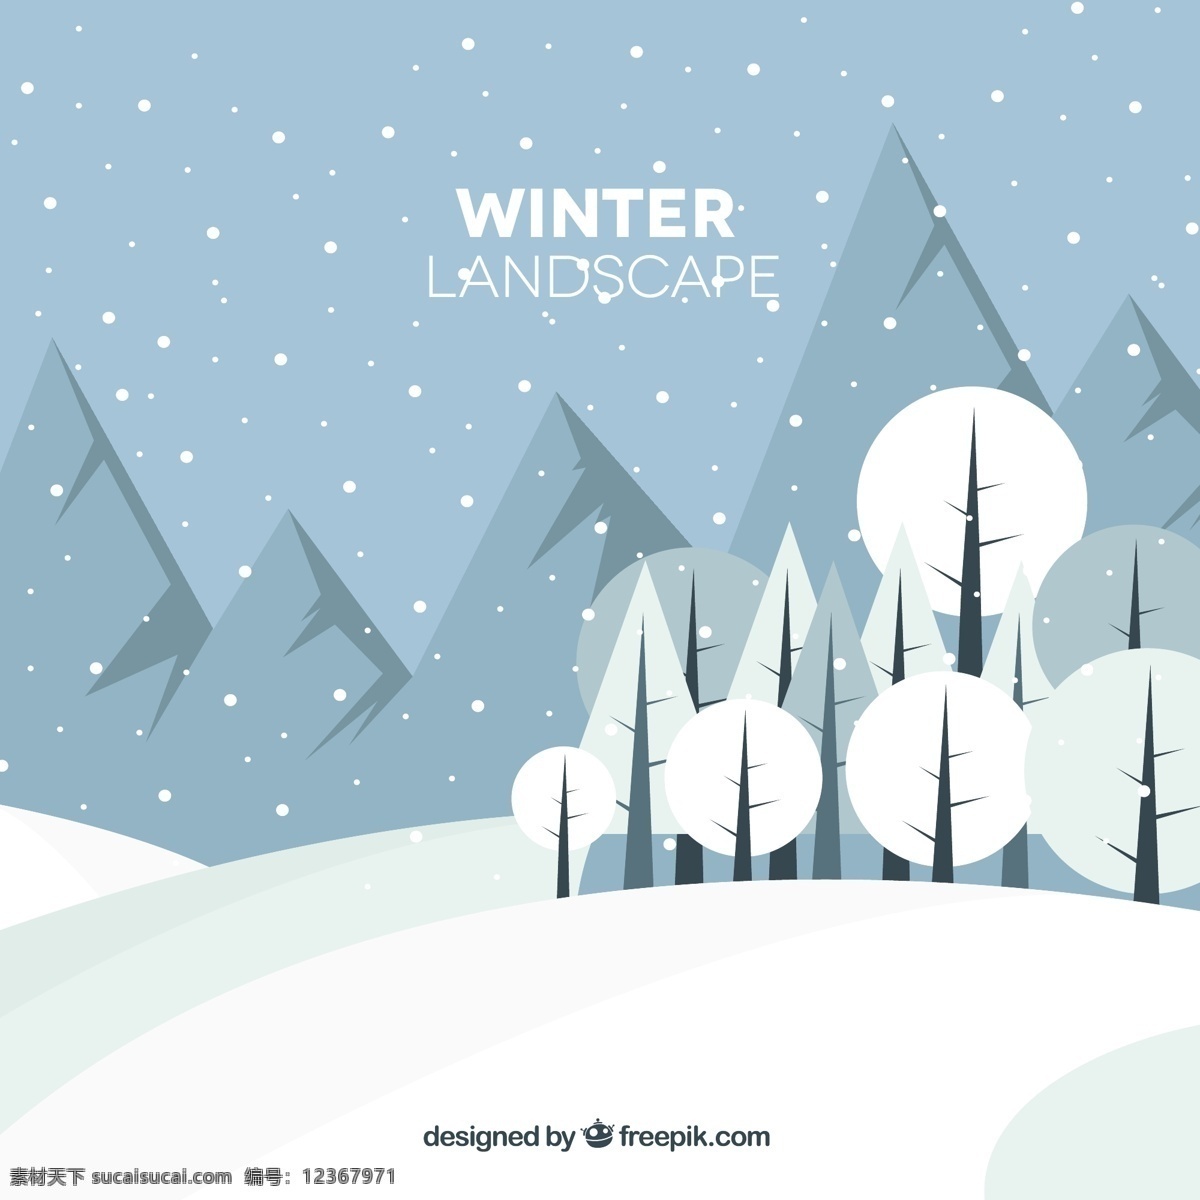 冬季 景观 山地 树种 平面 风格 冬季景观 树 冬季雪景